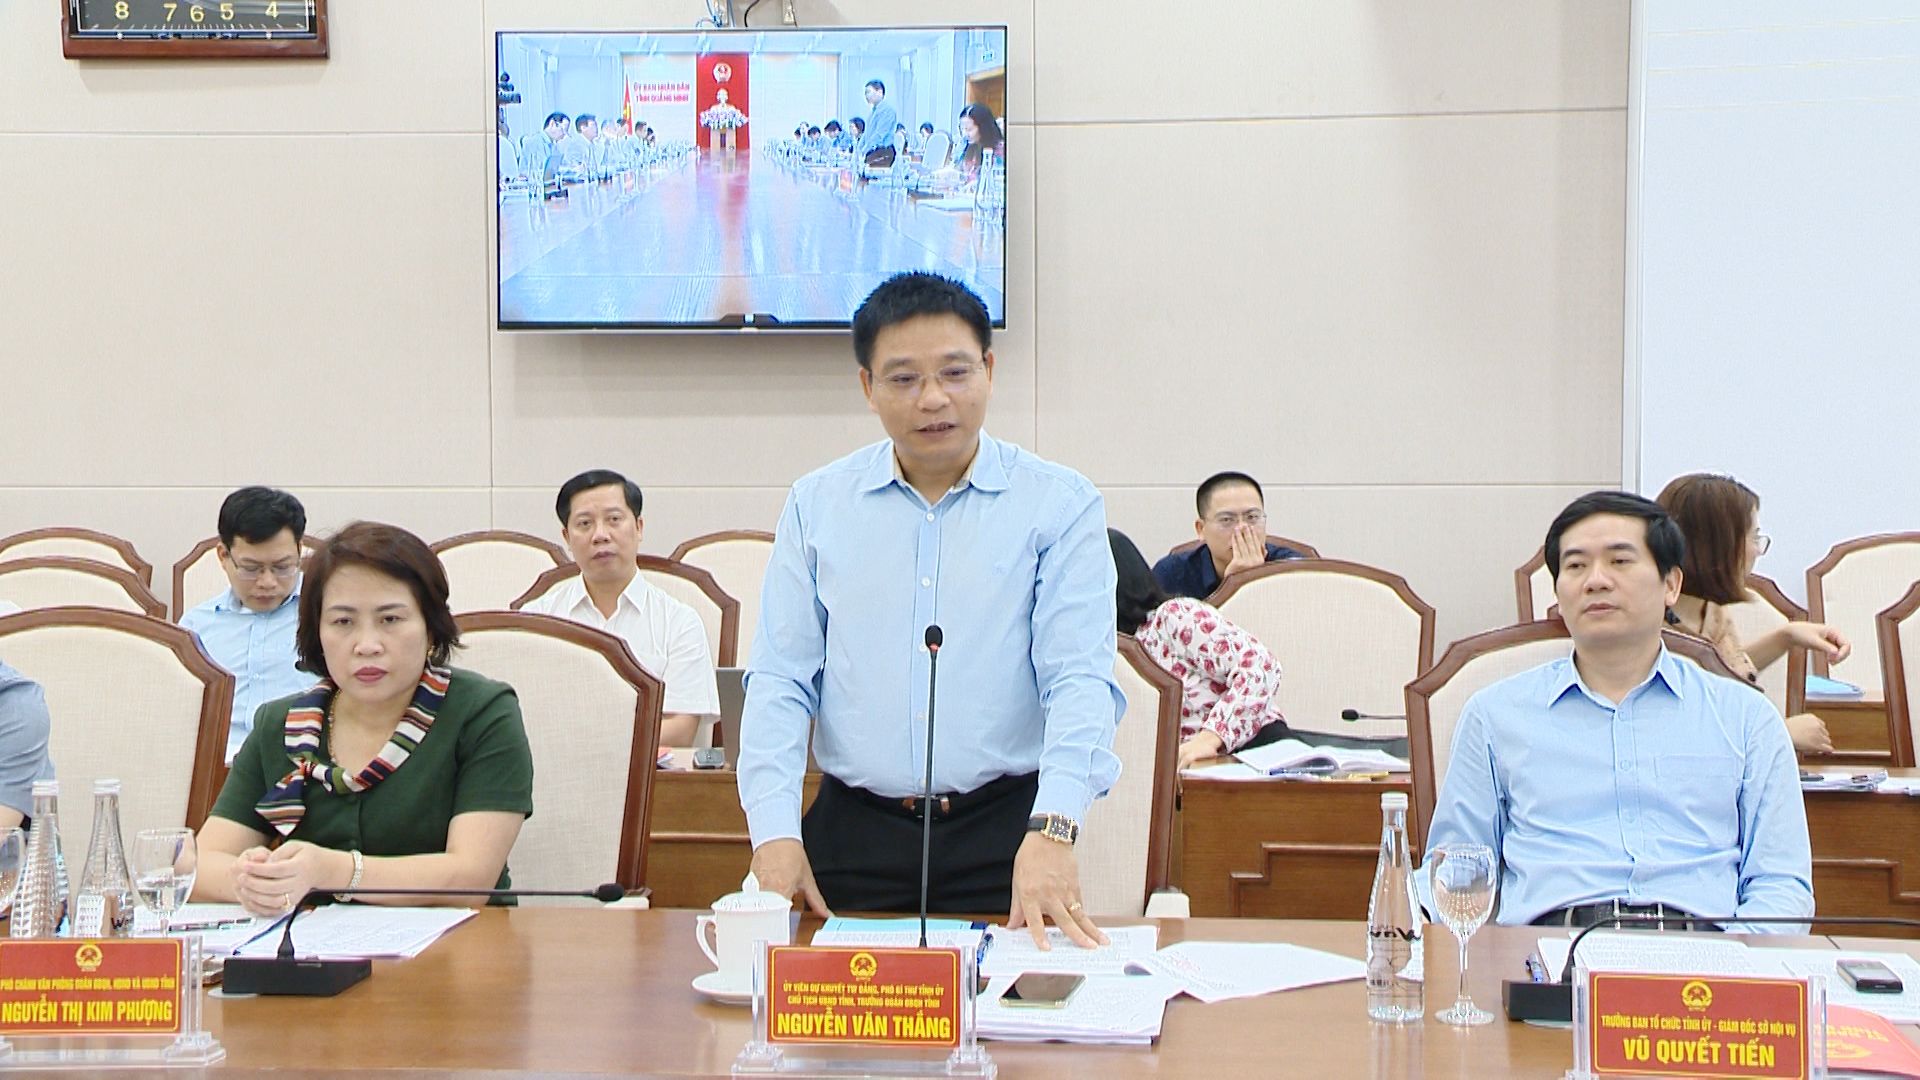 Đồng chí Nguyễn Văn Thắng, Chủ tịch uBND tỉnh phát biểu tại buổi làm việc